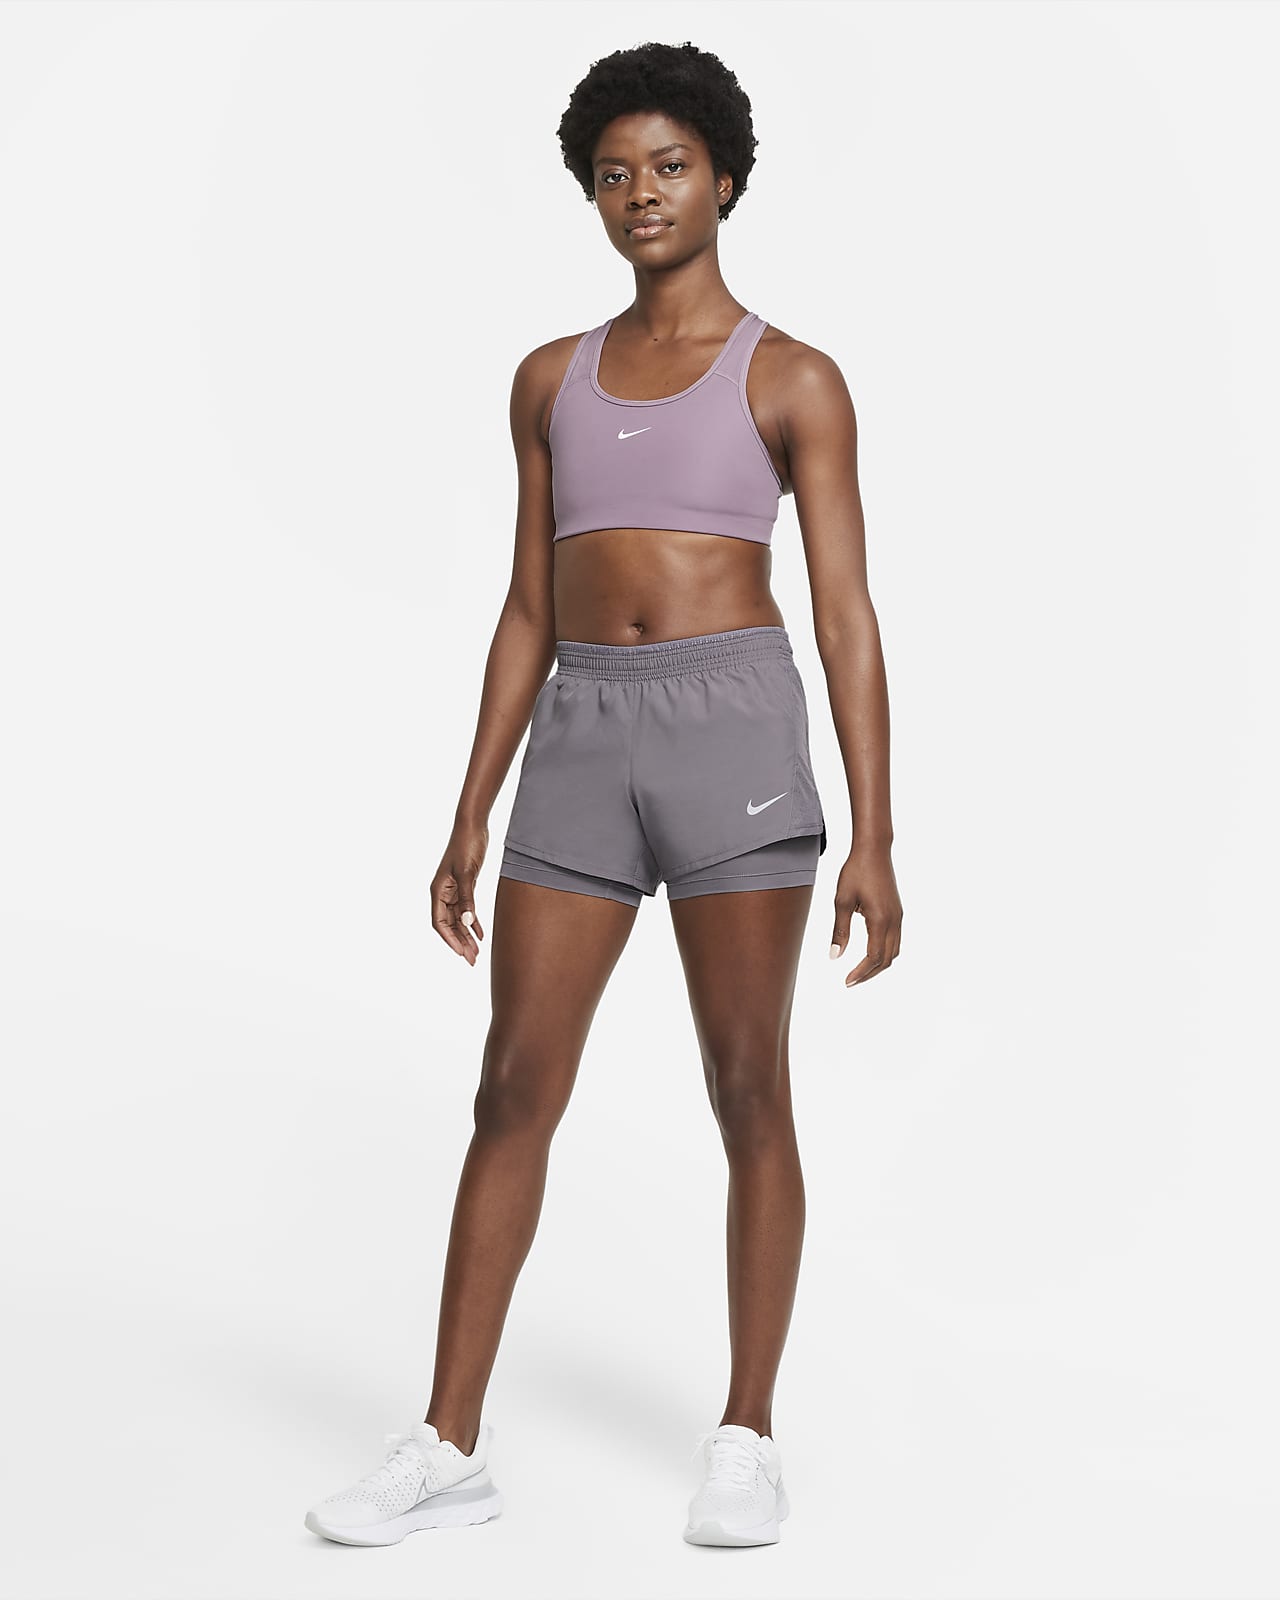 Women's Shorts. Nike CH